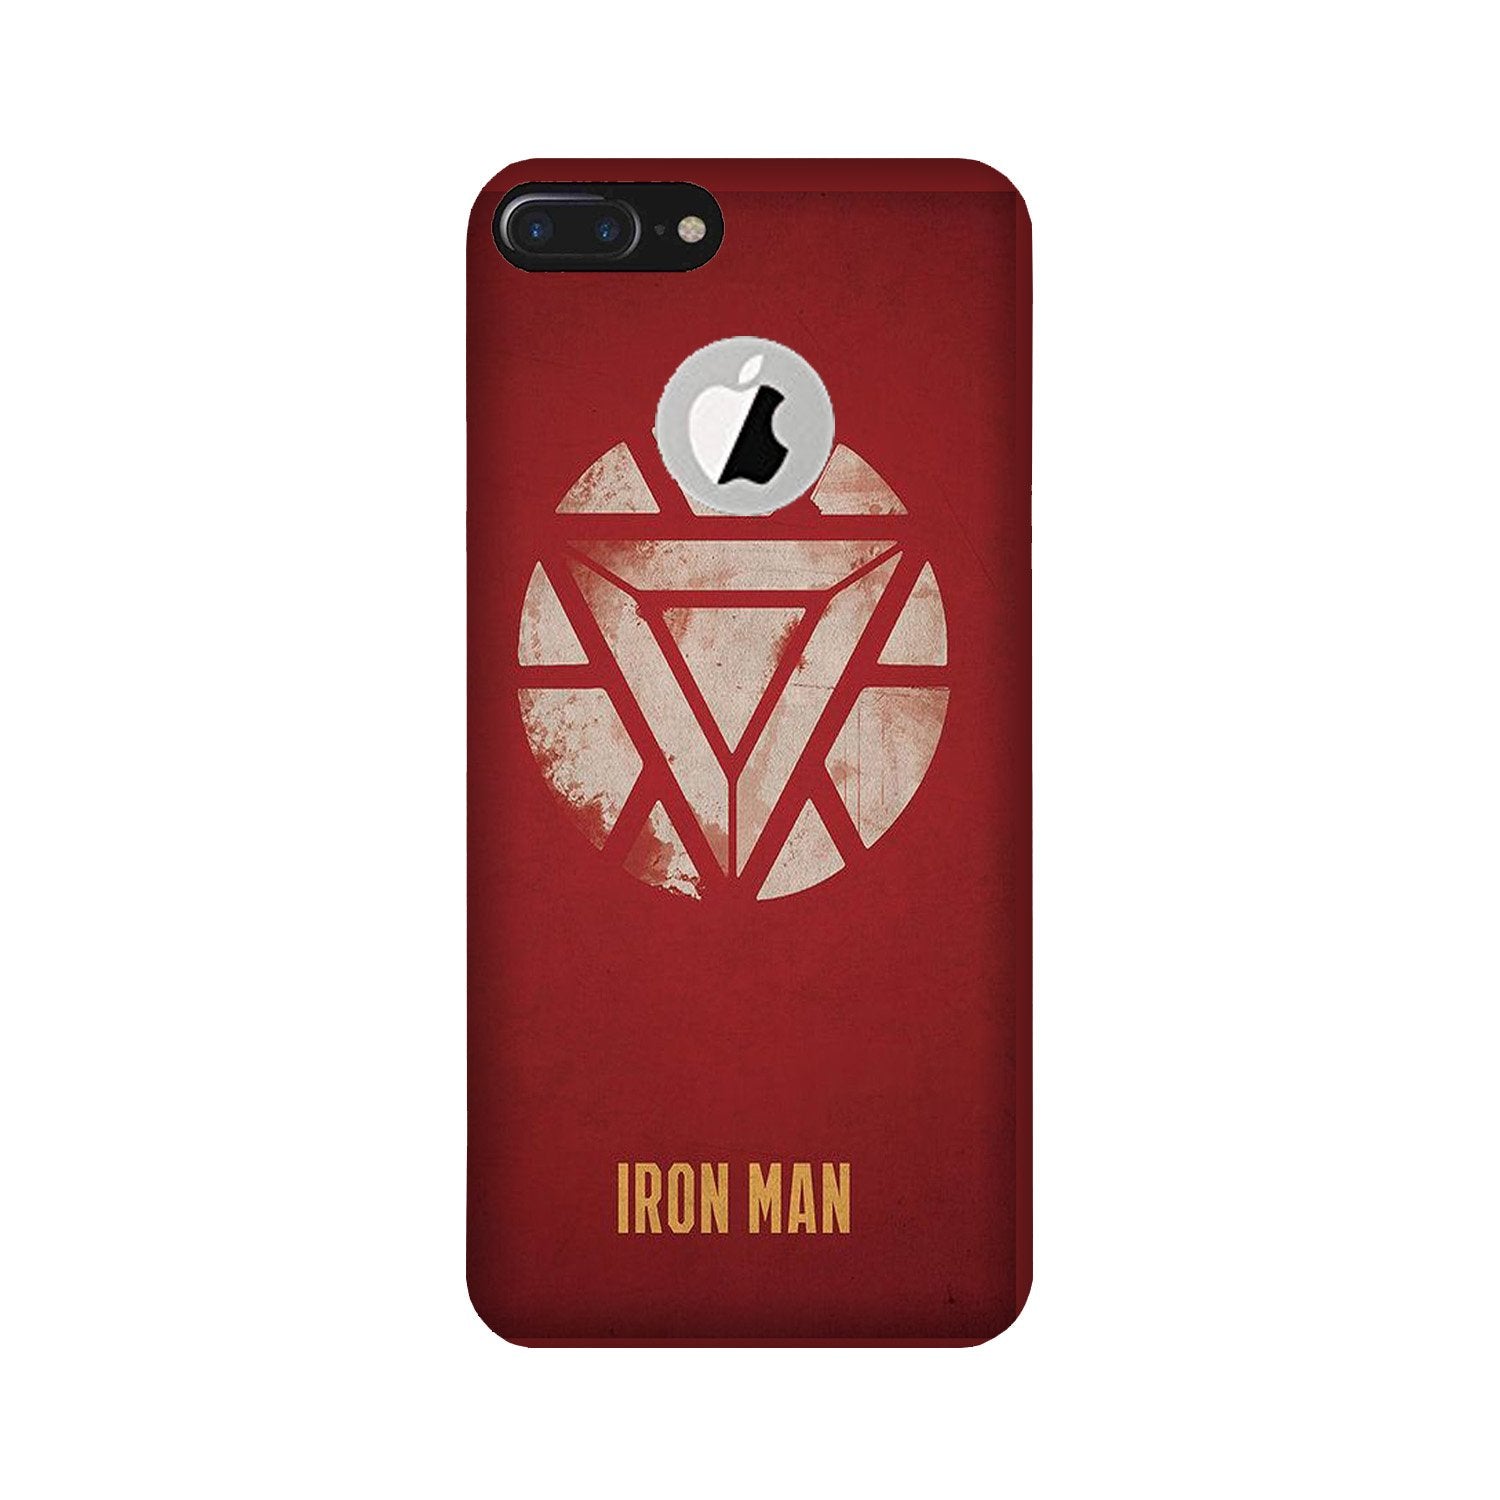 Iron Man Superhero Case for iPhone 7 Plus logo cut(Design - 115)